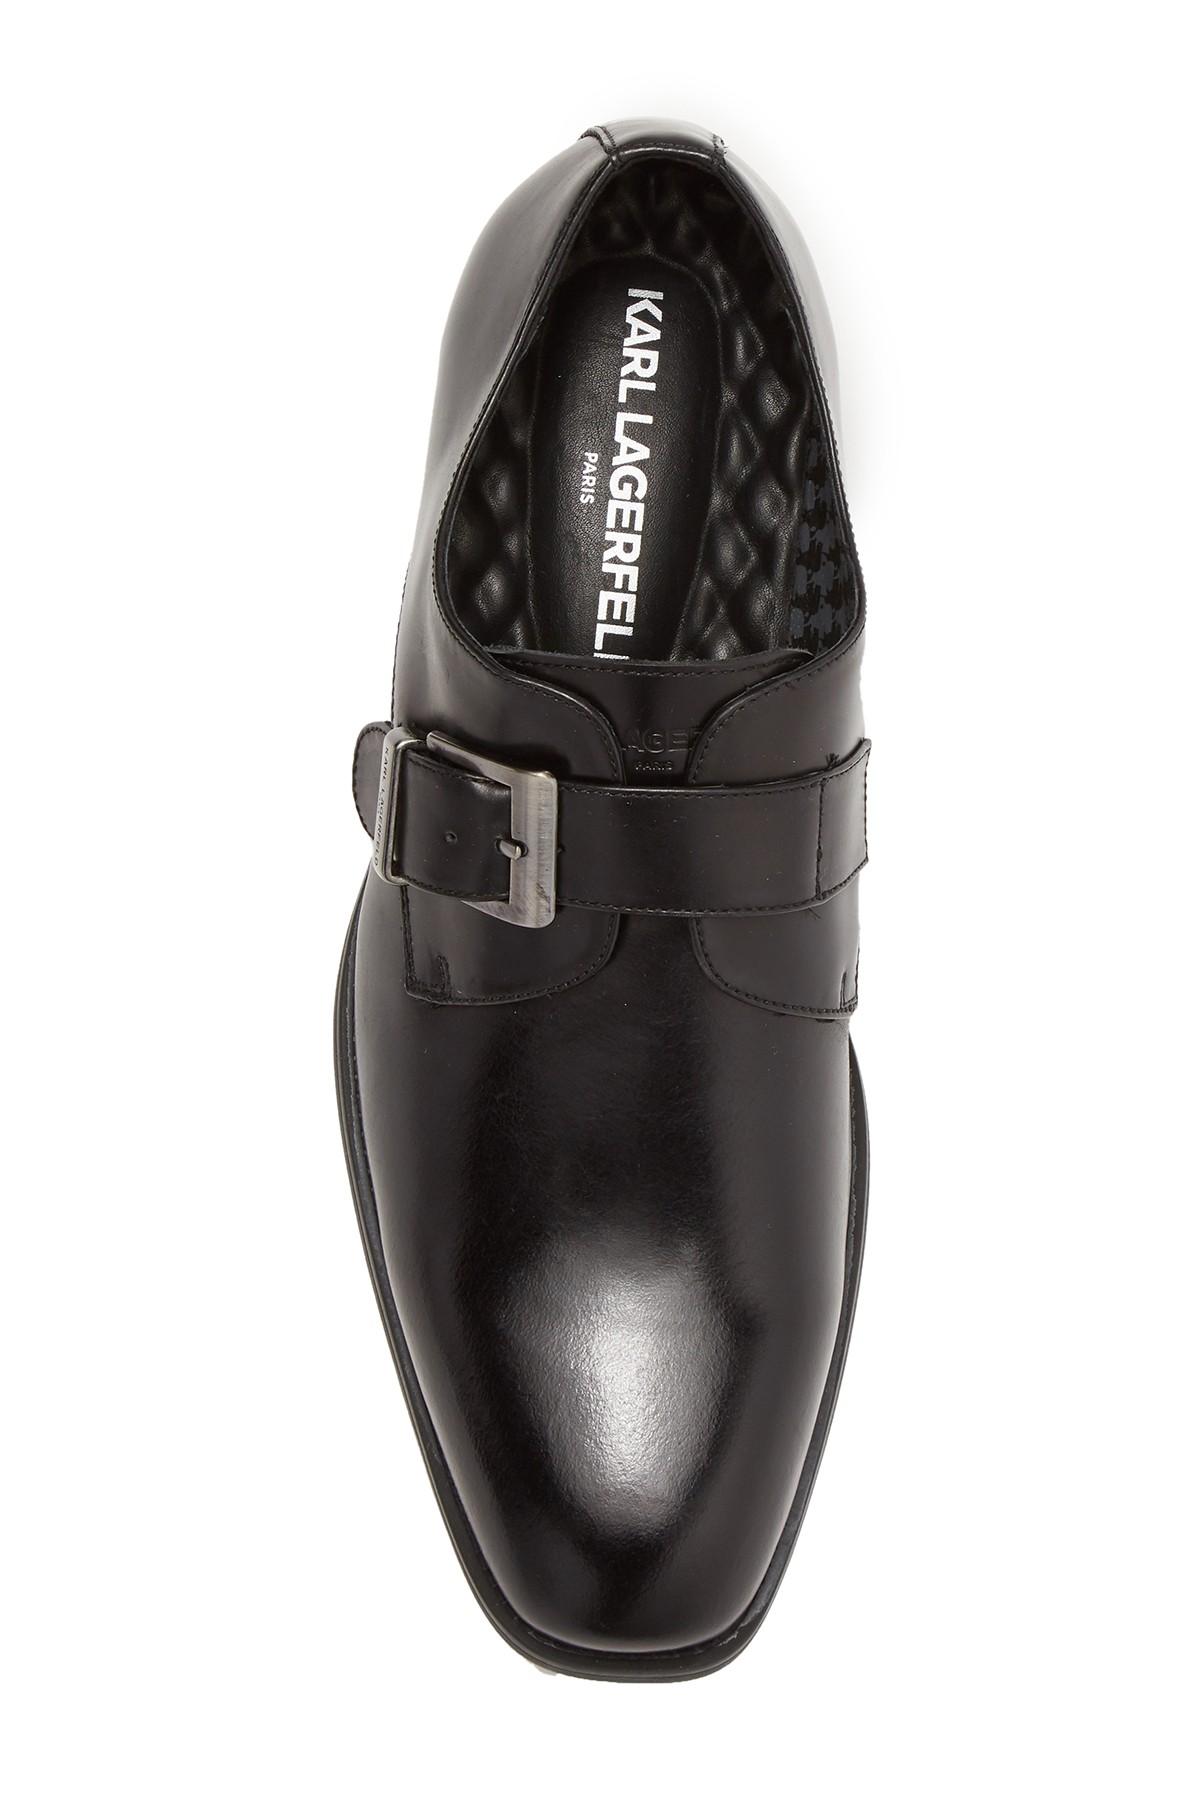 Karl Lagerfeld Monk-strap Leather Dress Shoe in Black for Men - Lyst